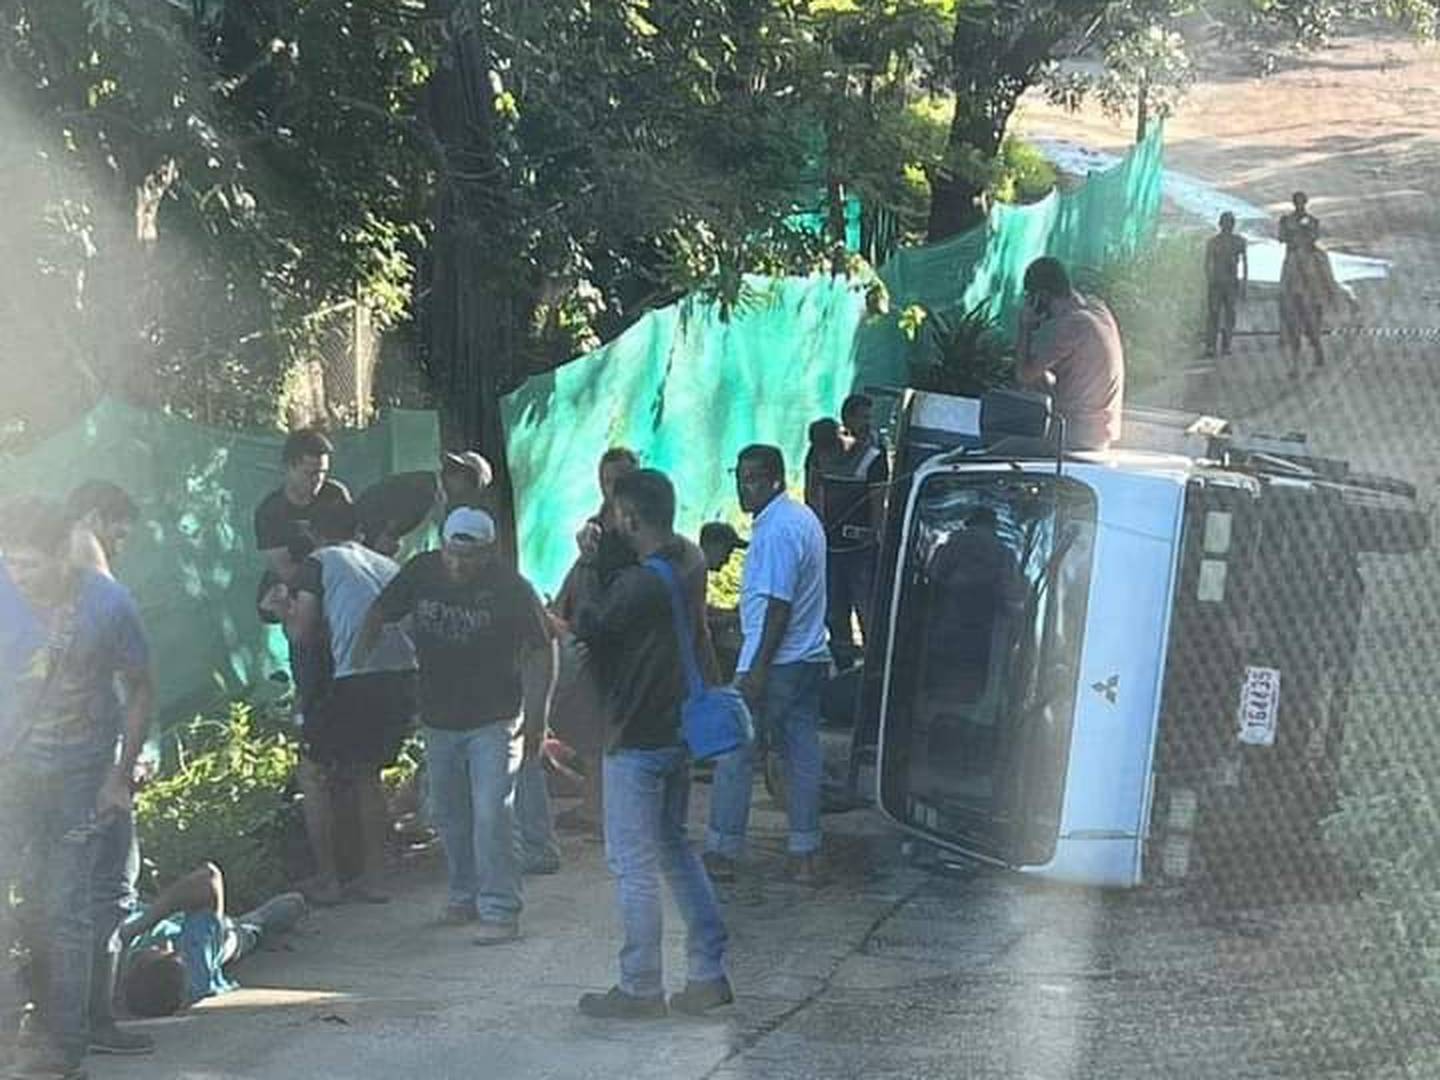 El accidente ocurrió en Cabo Velas, en Santa Cruz de Guanacaste. Foto cortesía.